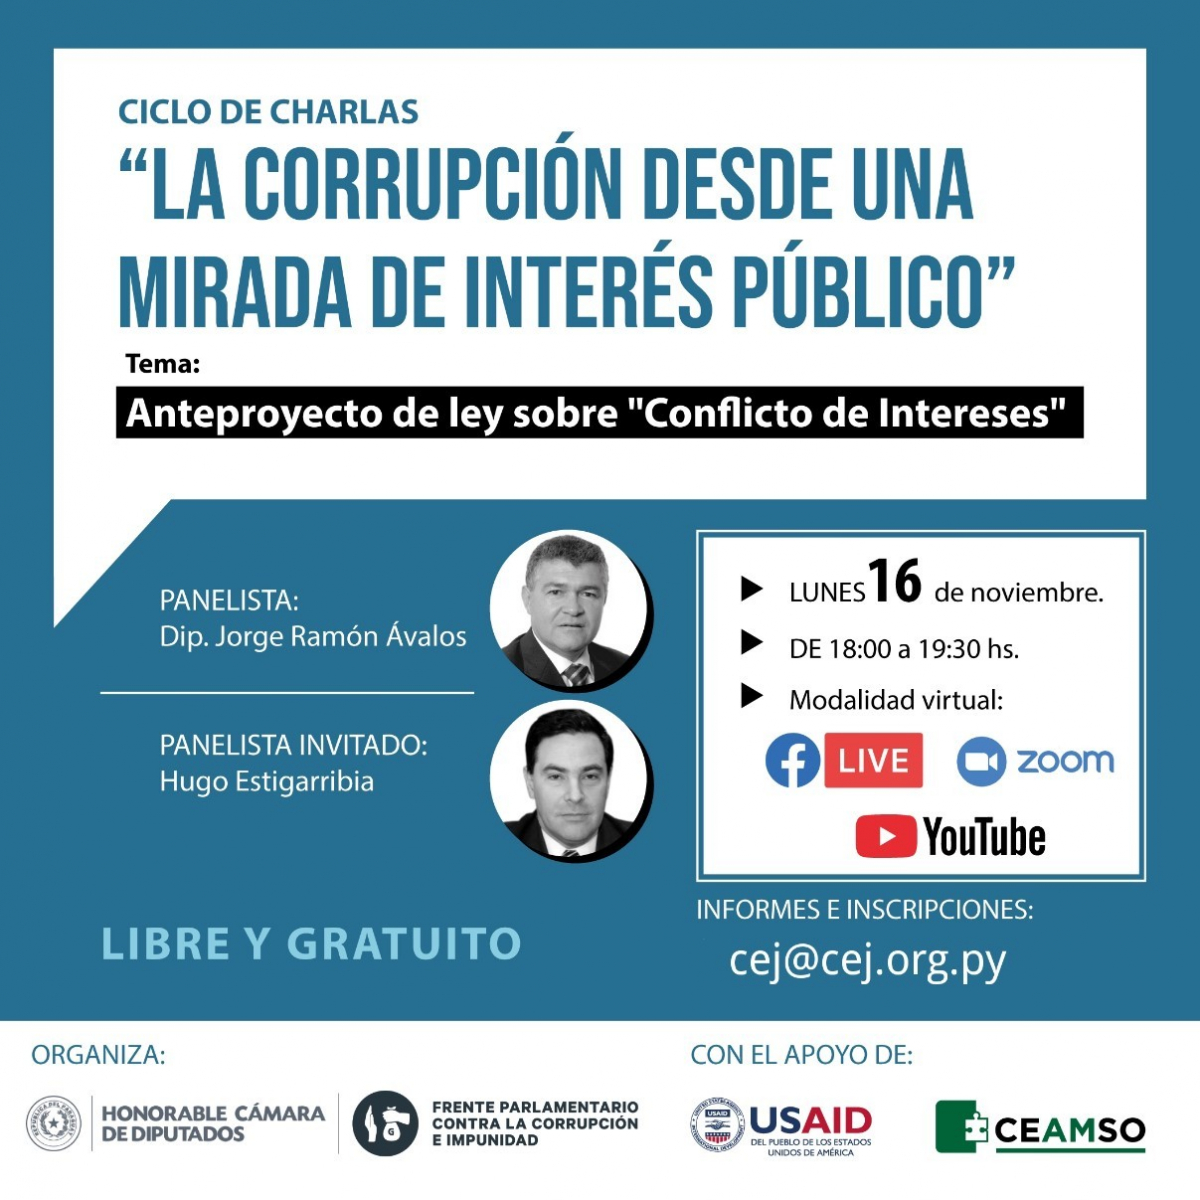 Ciclo de charlas “La corrupción desde una mirada de interés público”.